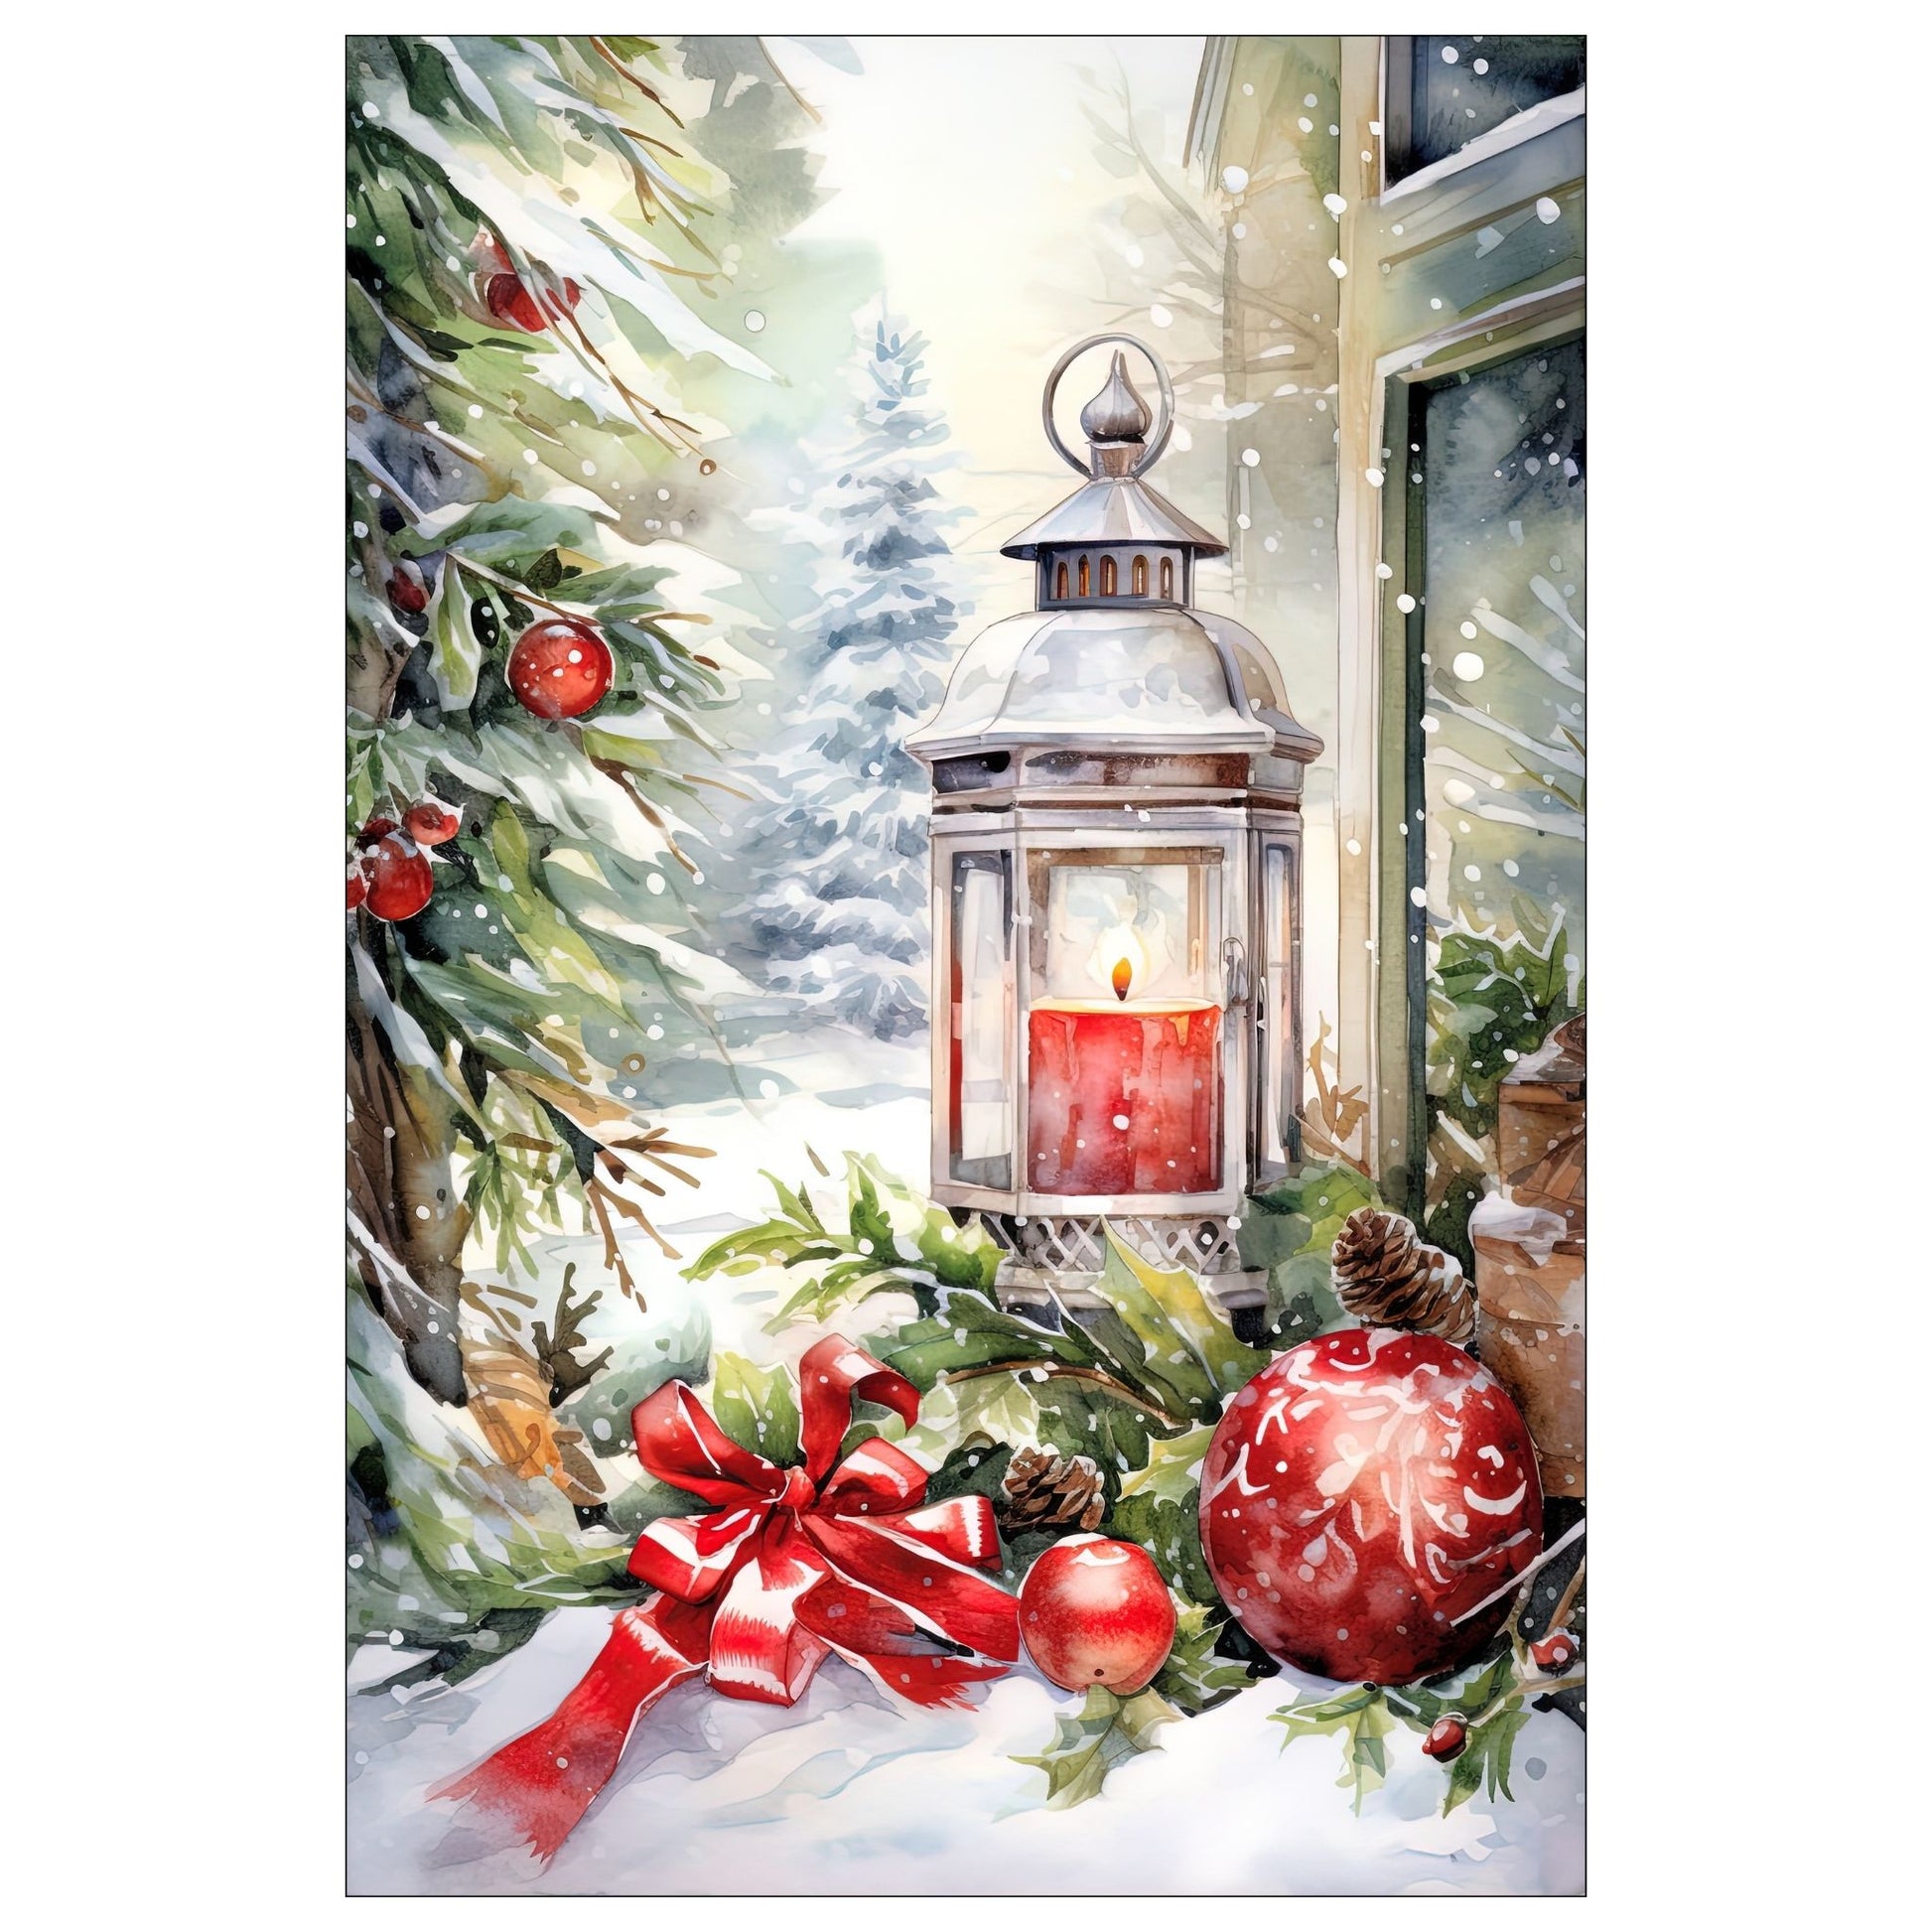 Dekorativt, grafisk julekort av en lyslykt med juledekorasjon, som står ute i snøen. Motivet har et nostalgisk preg.